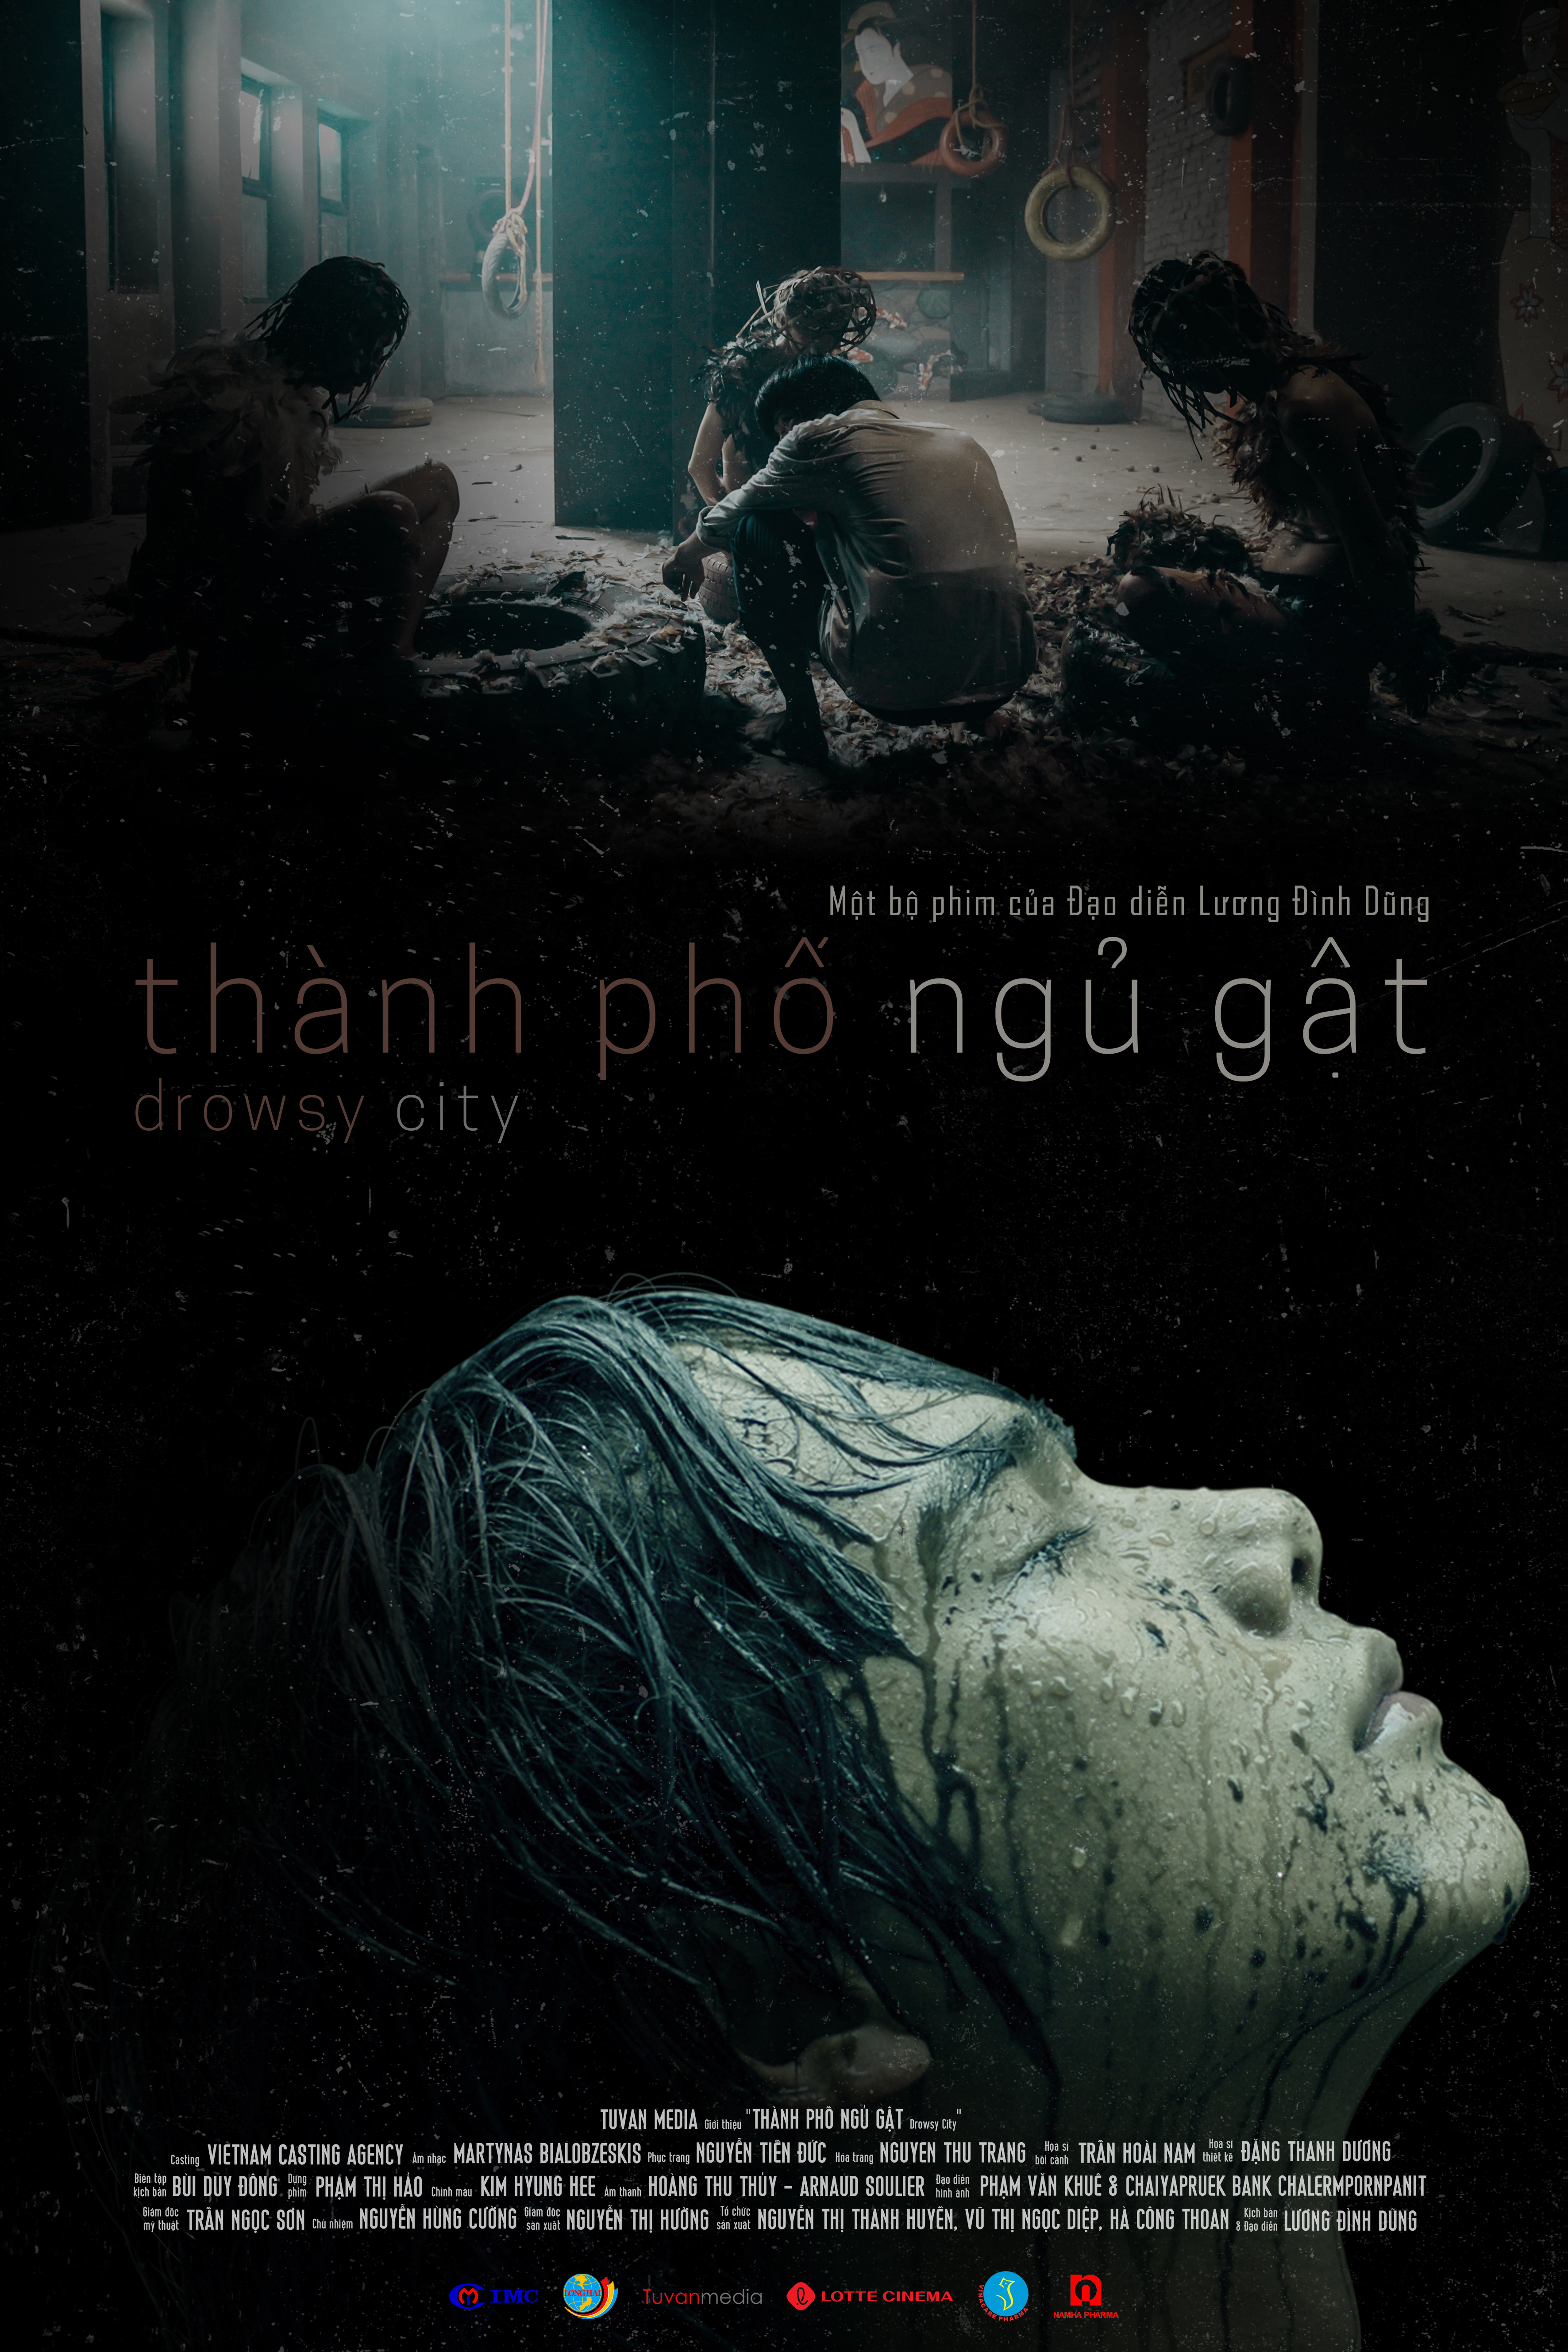 Thanh Pho Ngu Gat